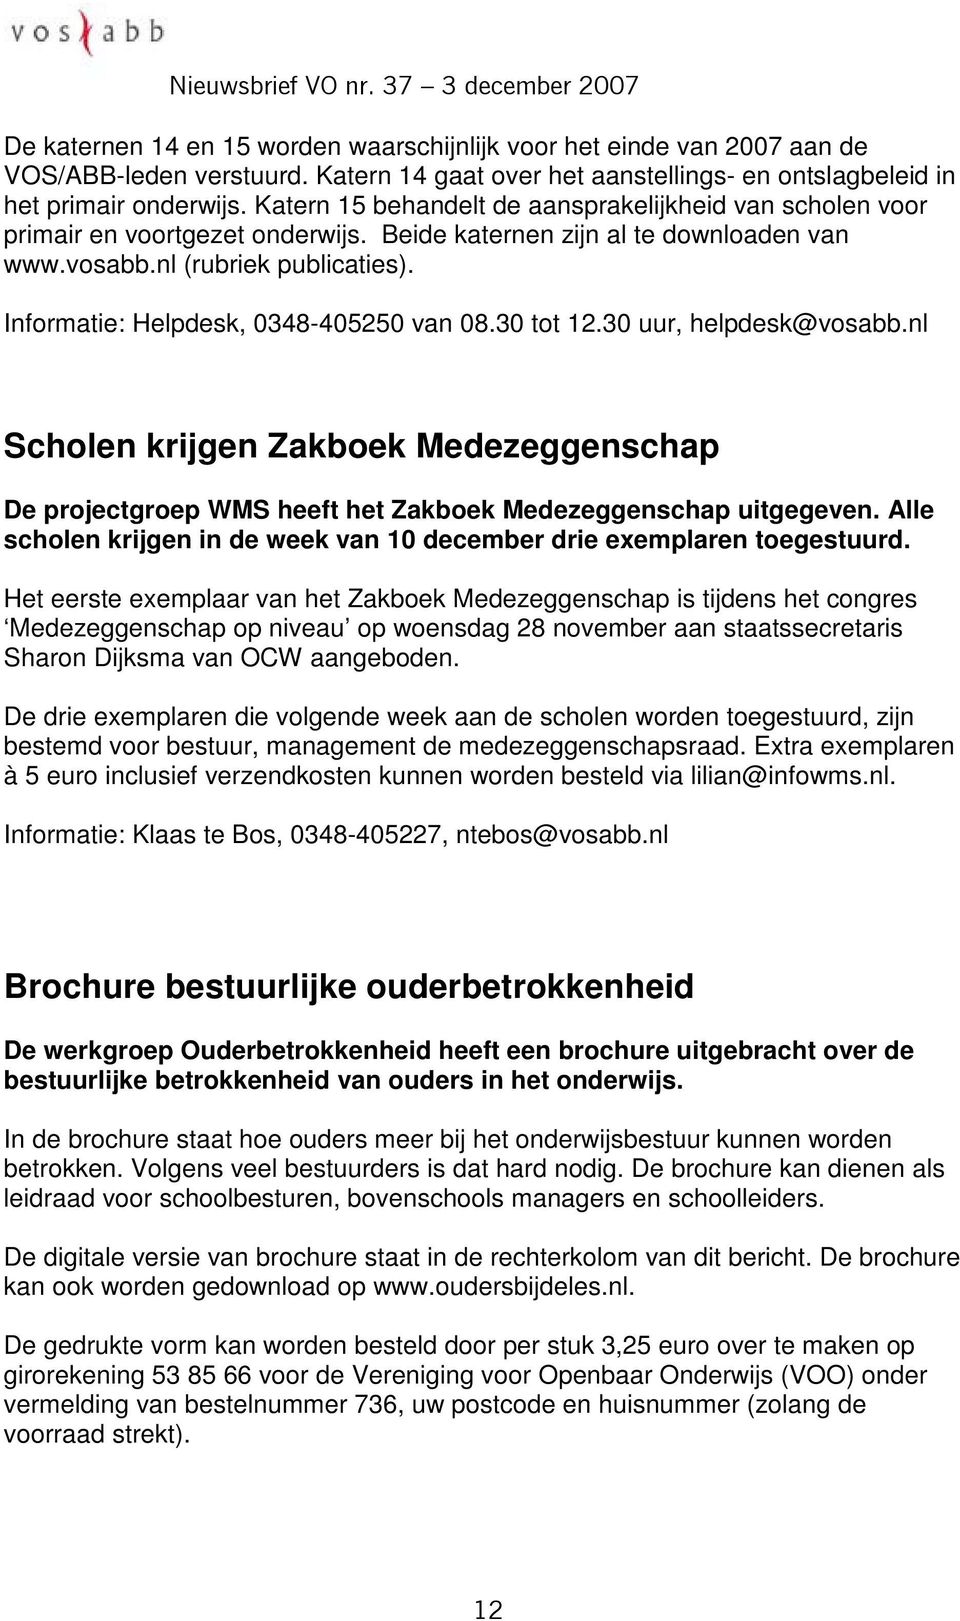 Informatie: Helpdesk, 0348-405250 van 08.30 tot 12.30 uur, helpdesk@vosabb.nl Scholen krijgen Zakboek Medezeggenschap De projectgroep WMS heeft het Zakboek Medezeggenschap uitgegeven.